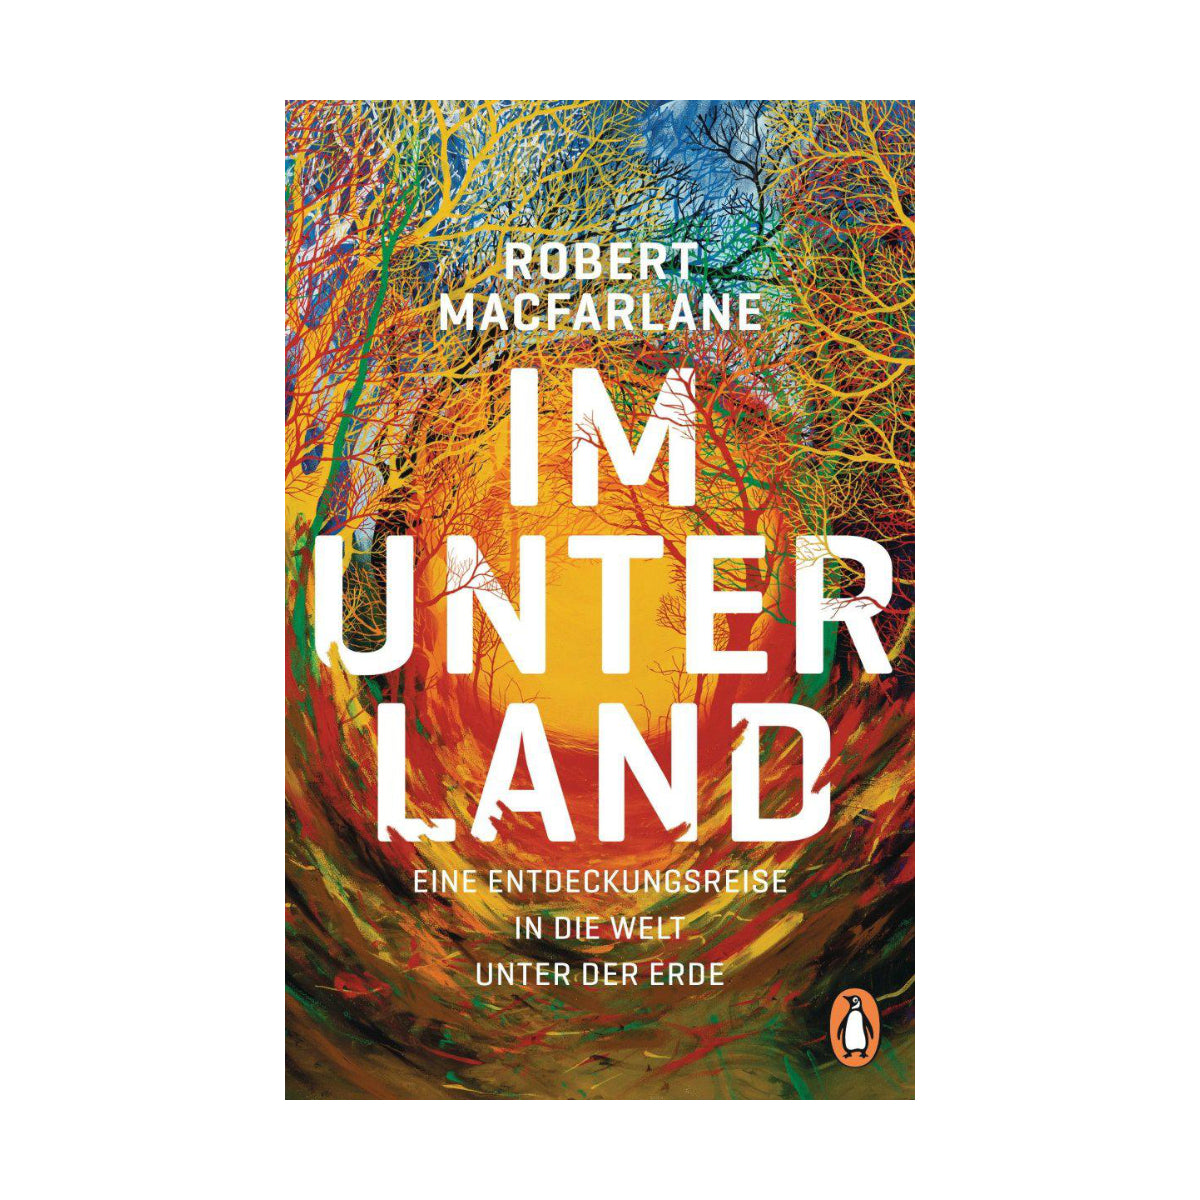 Buch IM UNTERLAND von Robert Macfarlane